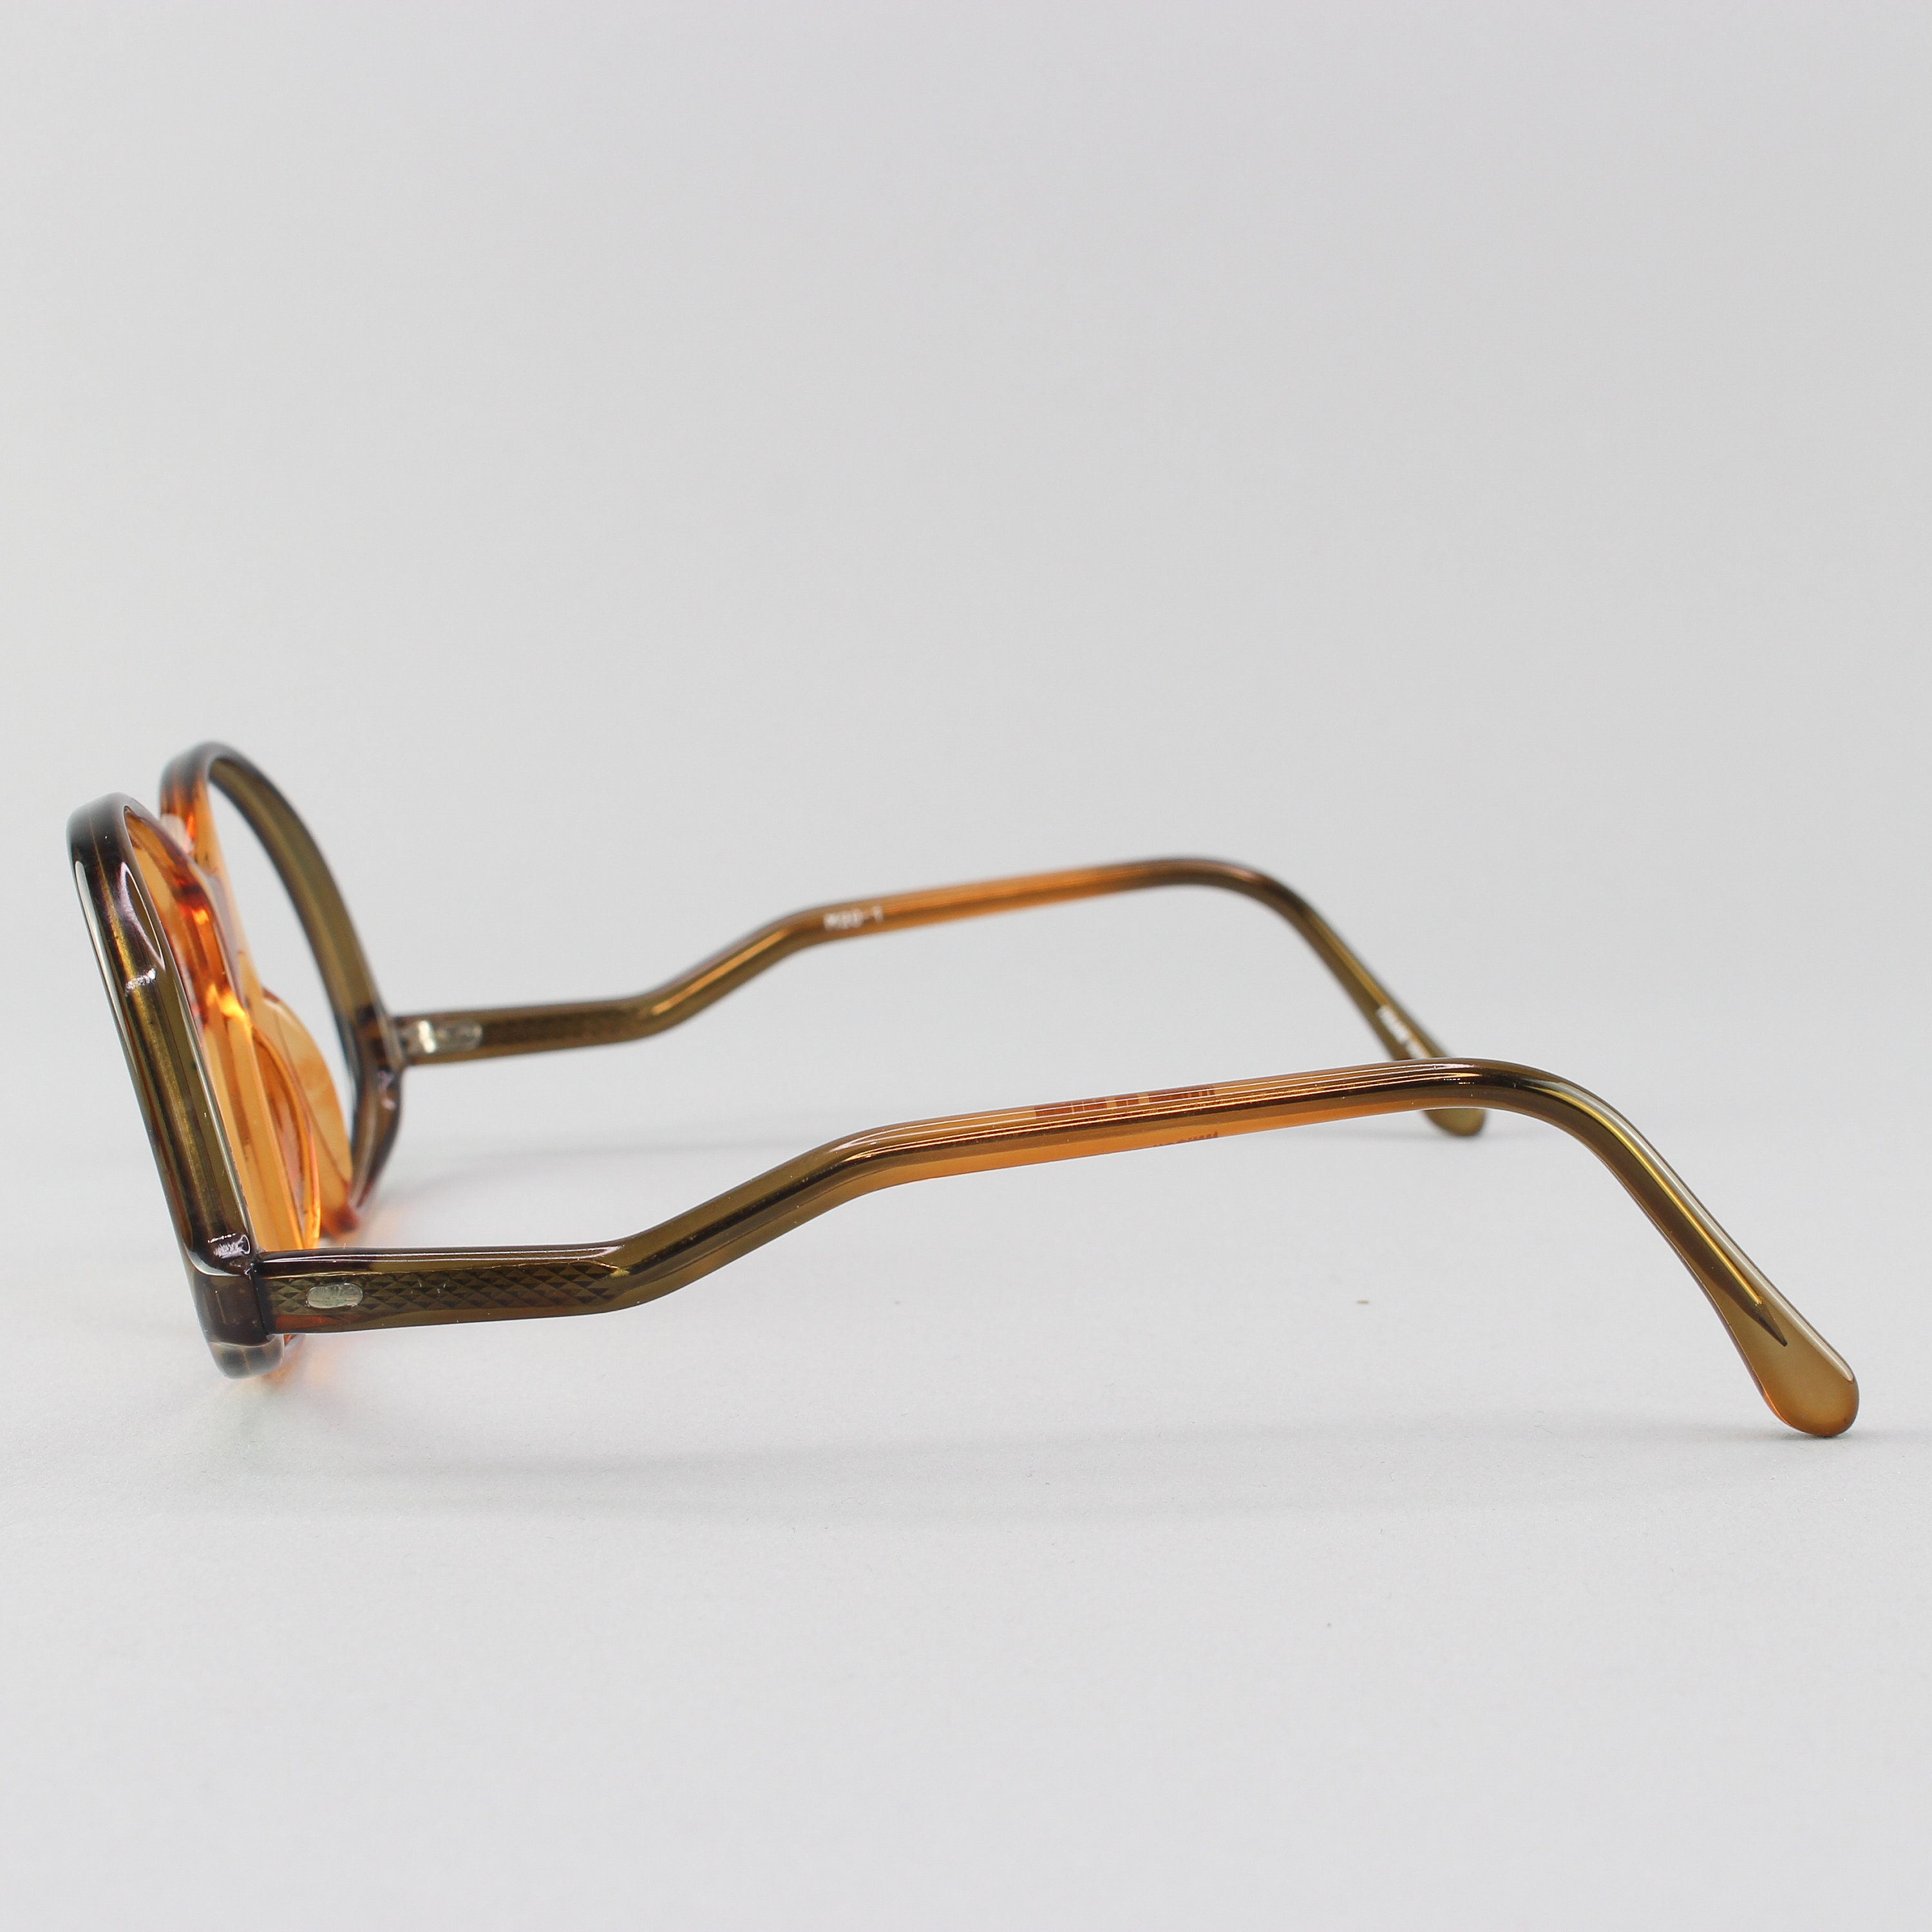 Vintage Eyeglasses 70s Glasses Clear Brown Glasses Frames 1970s